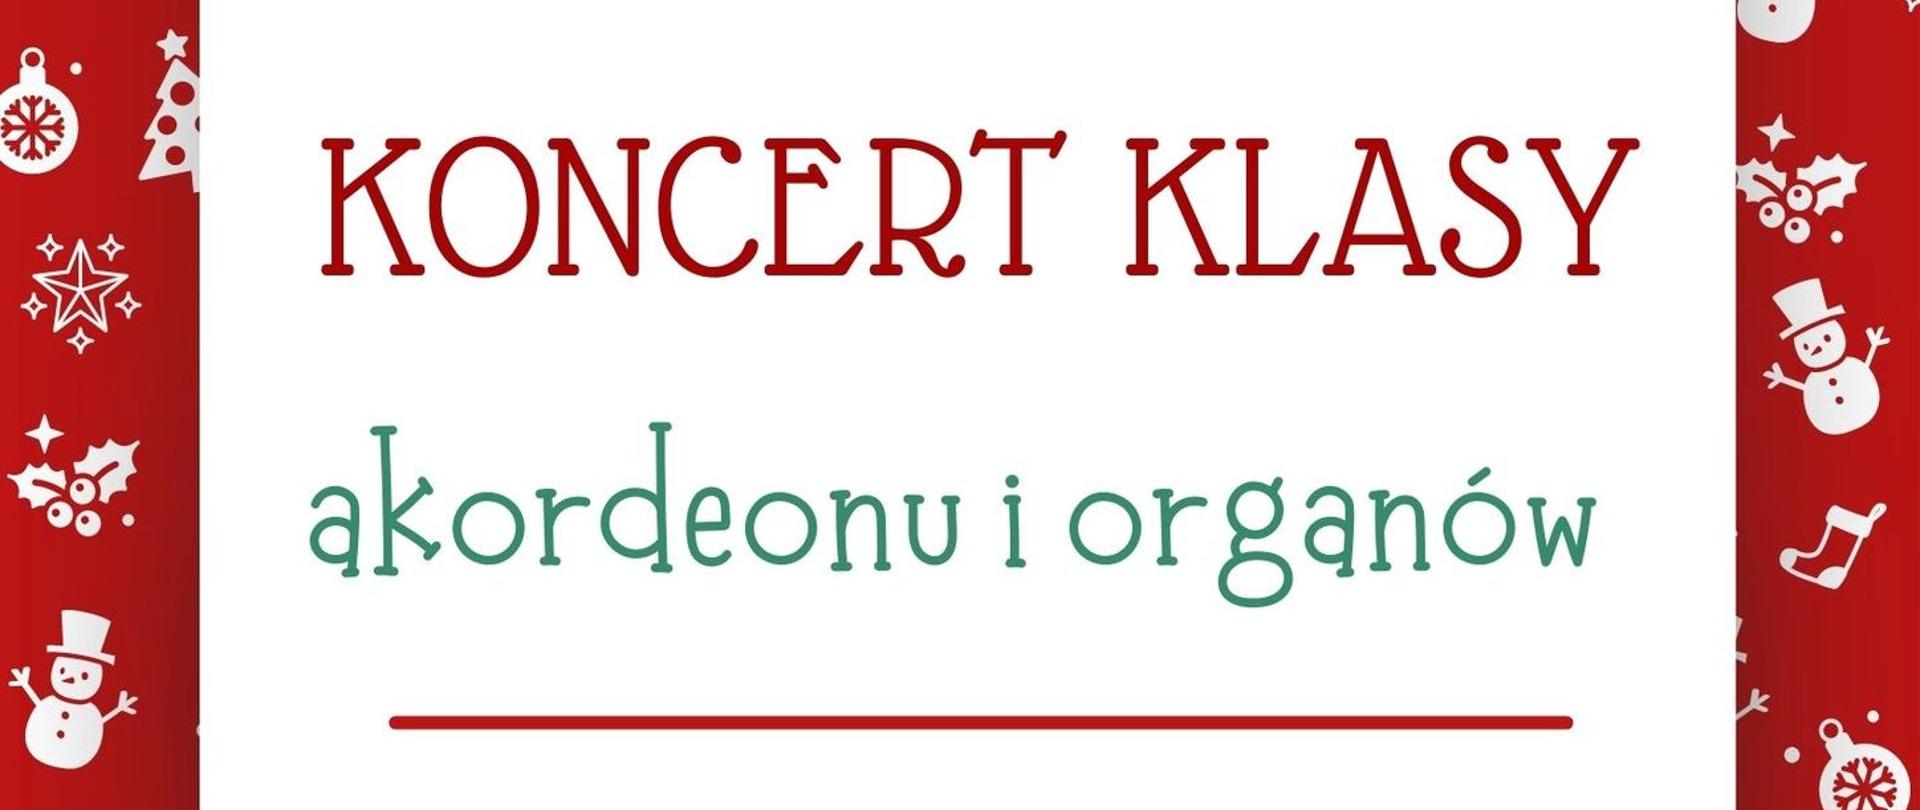 Koncert klasy akordeonu i organów 12.01.2023
Plakat w scenerii świątecznej zapraszający na wydarzenie w szkolnej auli.
Koncert prowadzi Arkadiusz Gembara i Paweł Pawlik. 